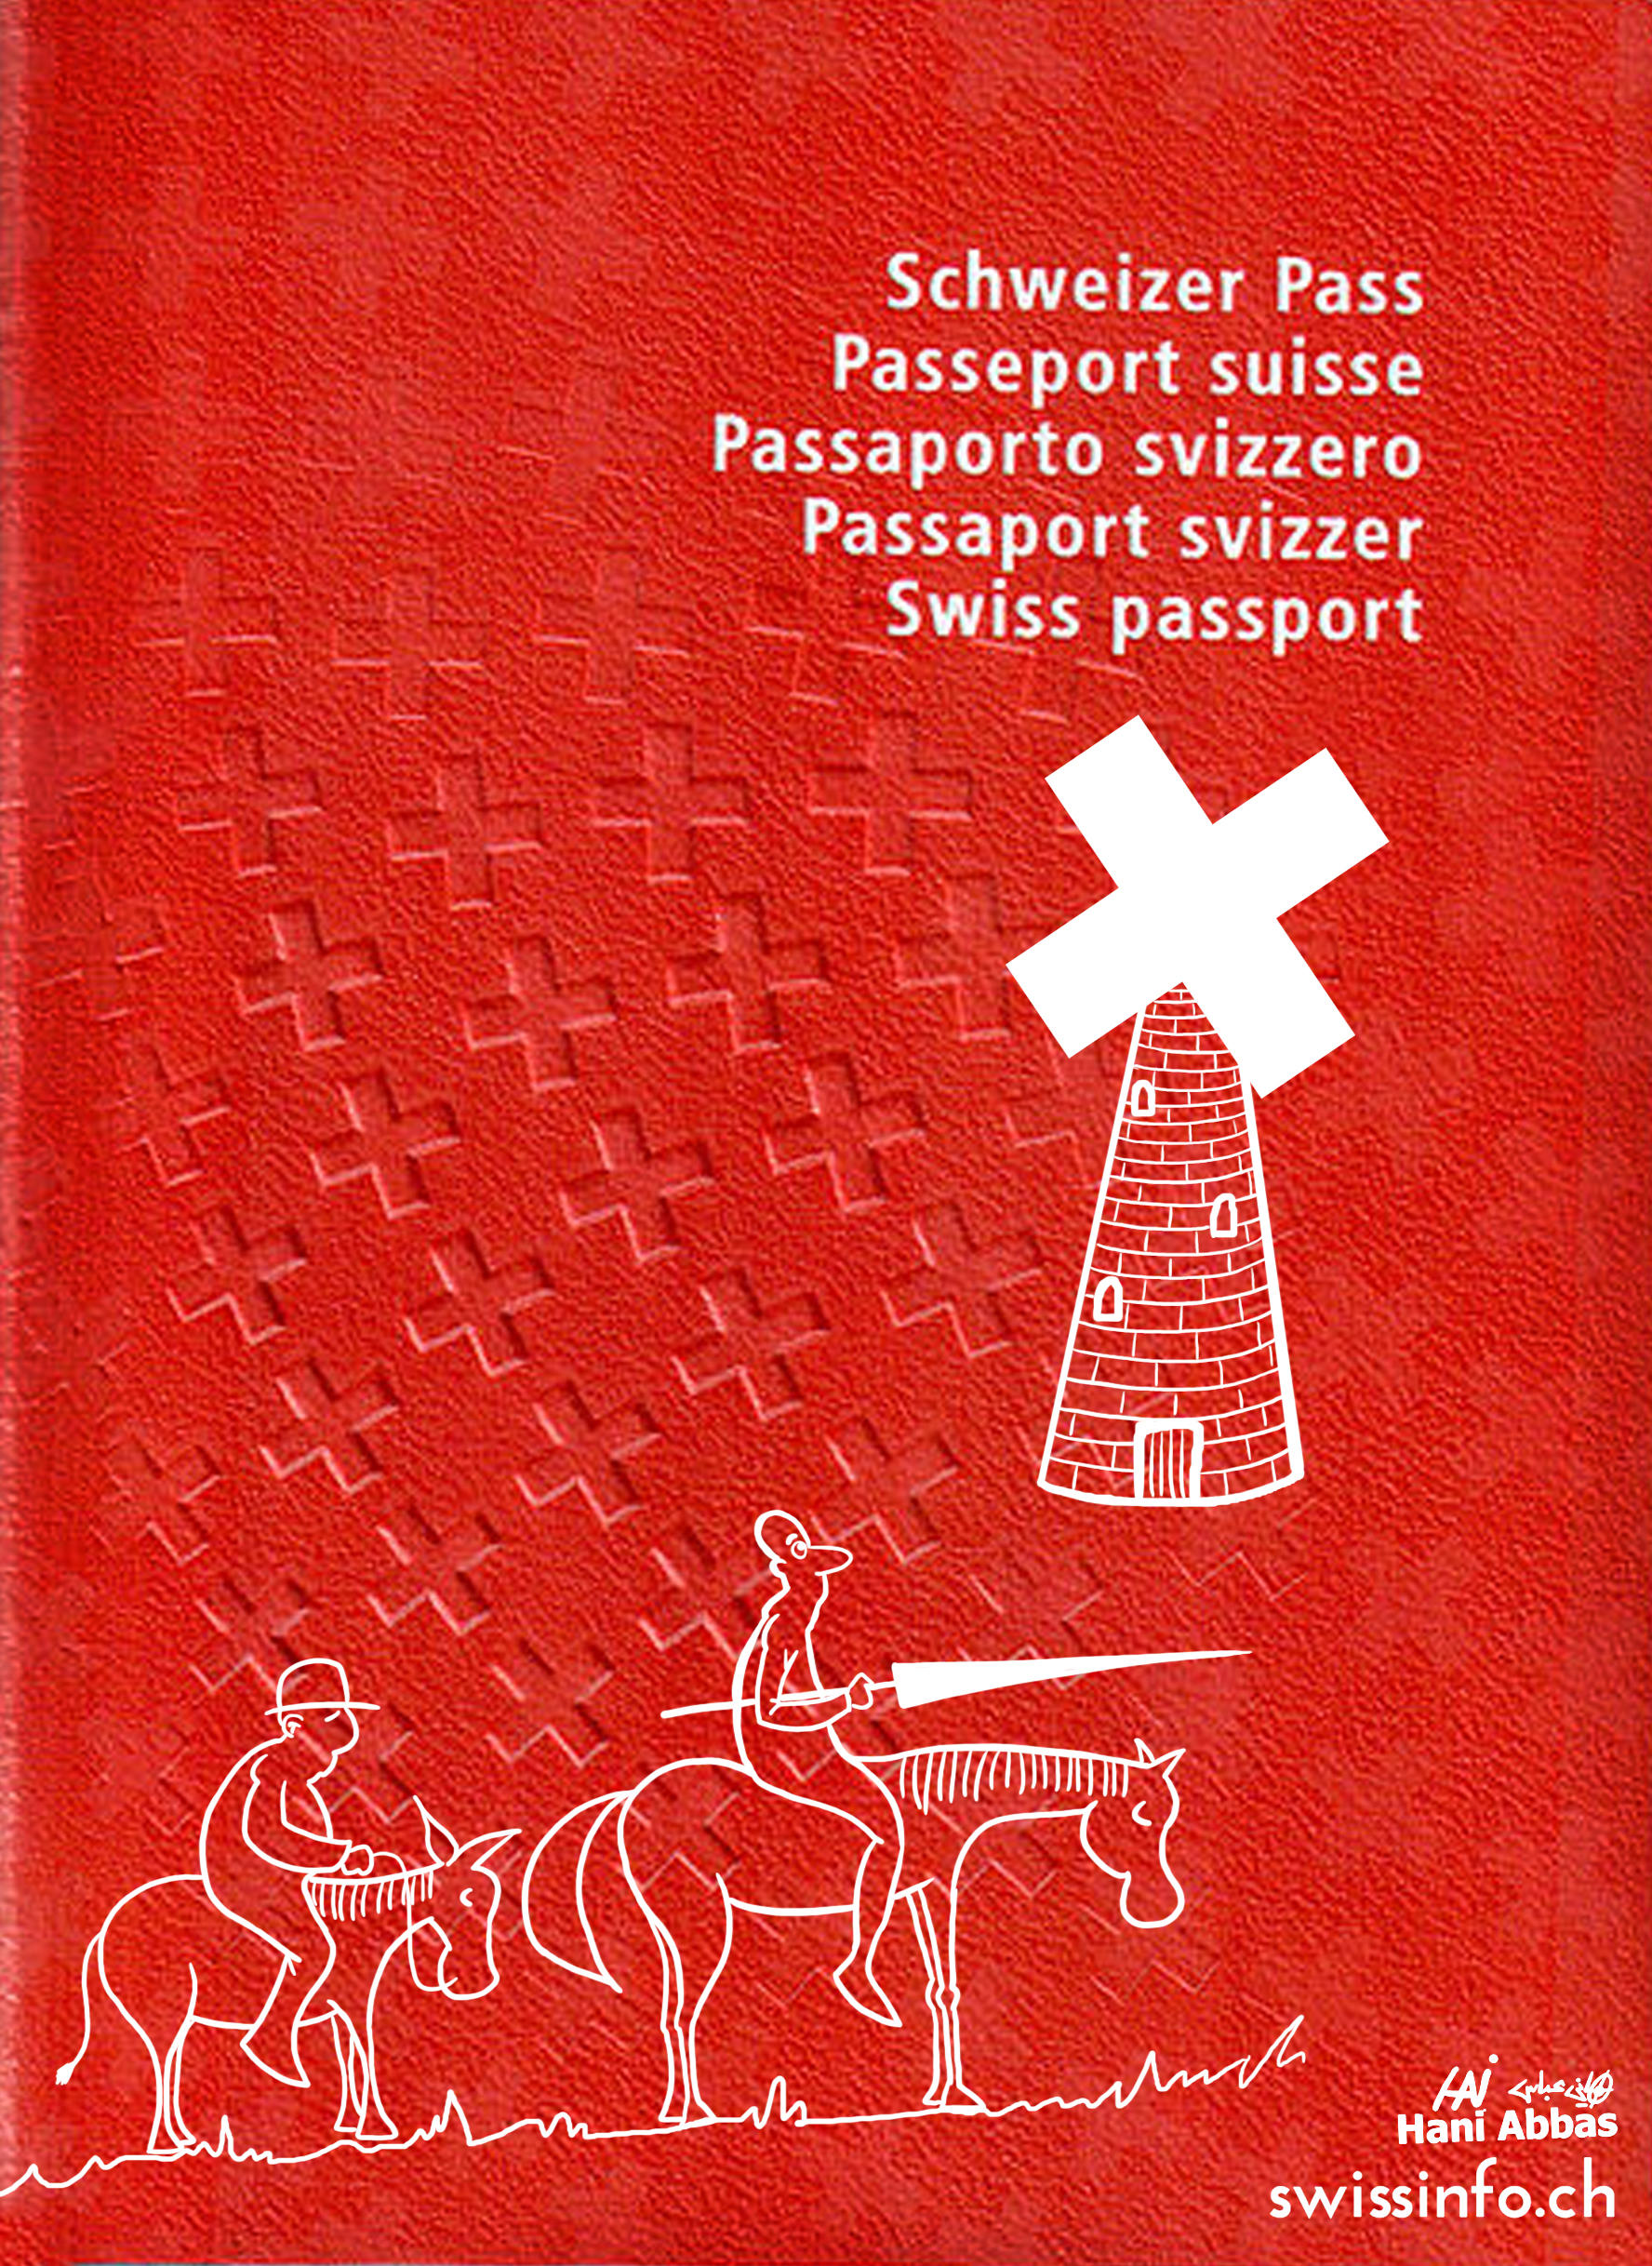 رسم كاريكاتوري عن طول إجراءات الحصول على جواز السفر السويسري